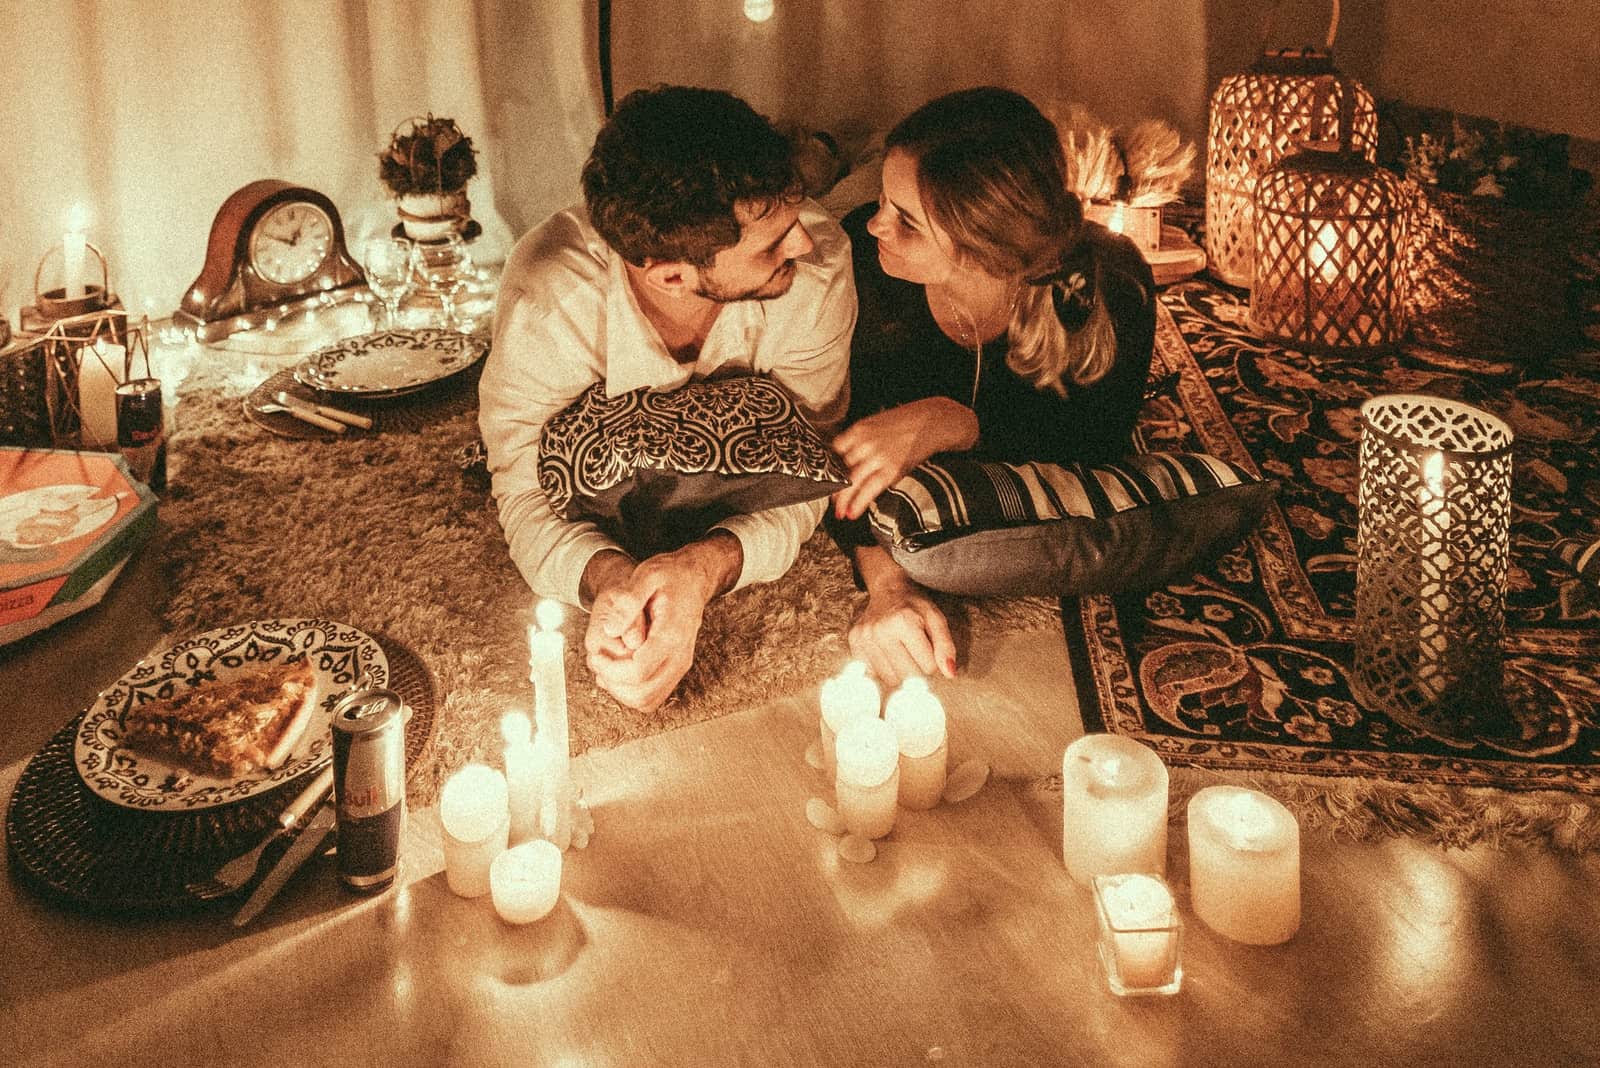 Un homme et une femme se regardent dans les yeux alors qu'ils sont allongés près de bougies